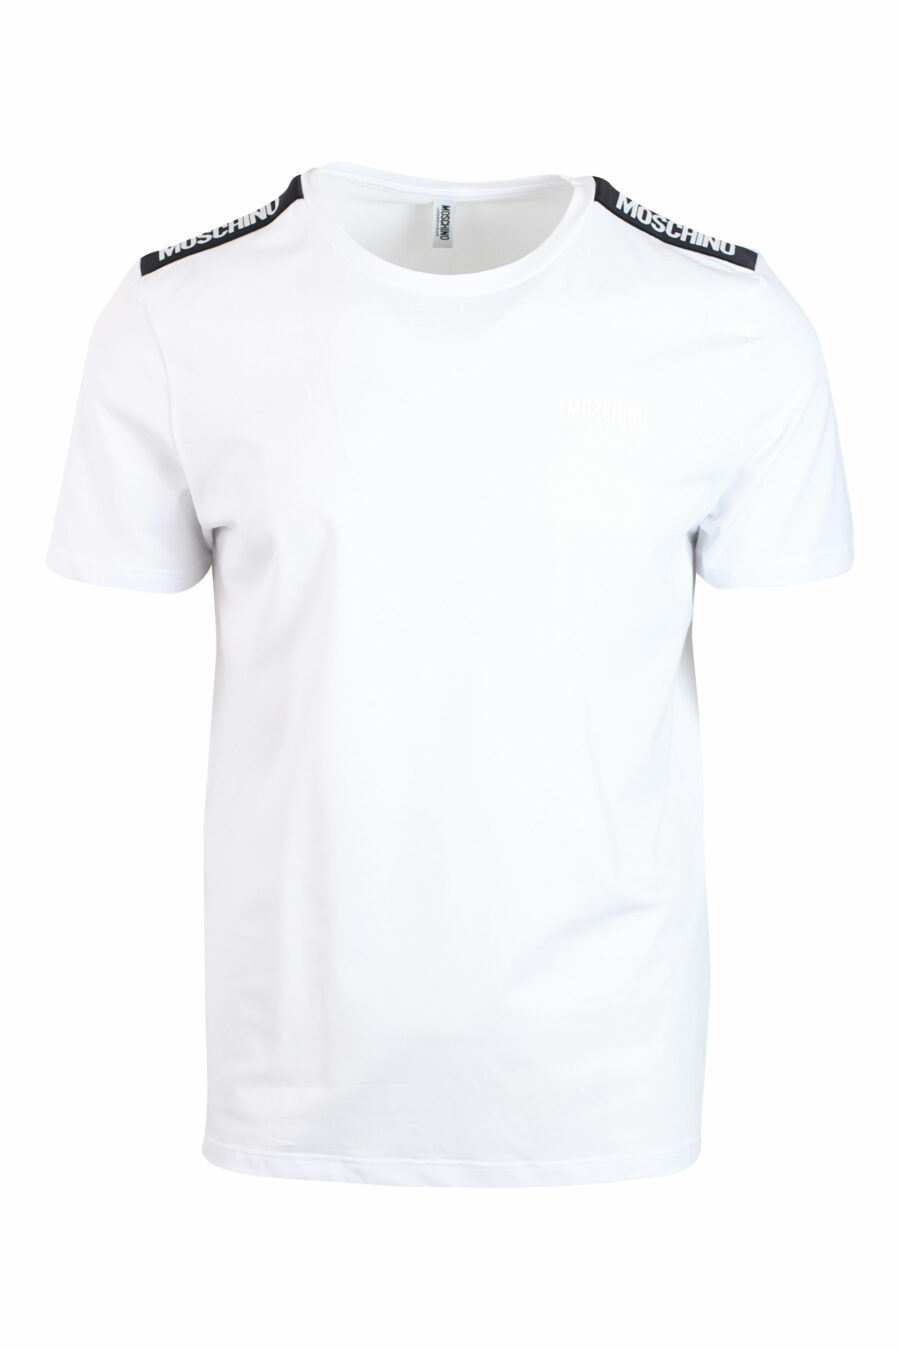 Conjunto de duas T-shirts brancas com faixa de ombro com logótipo - IMG 0131